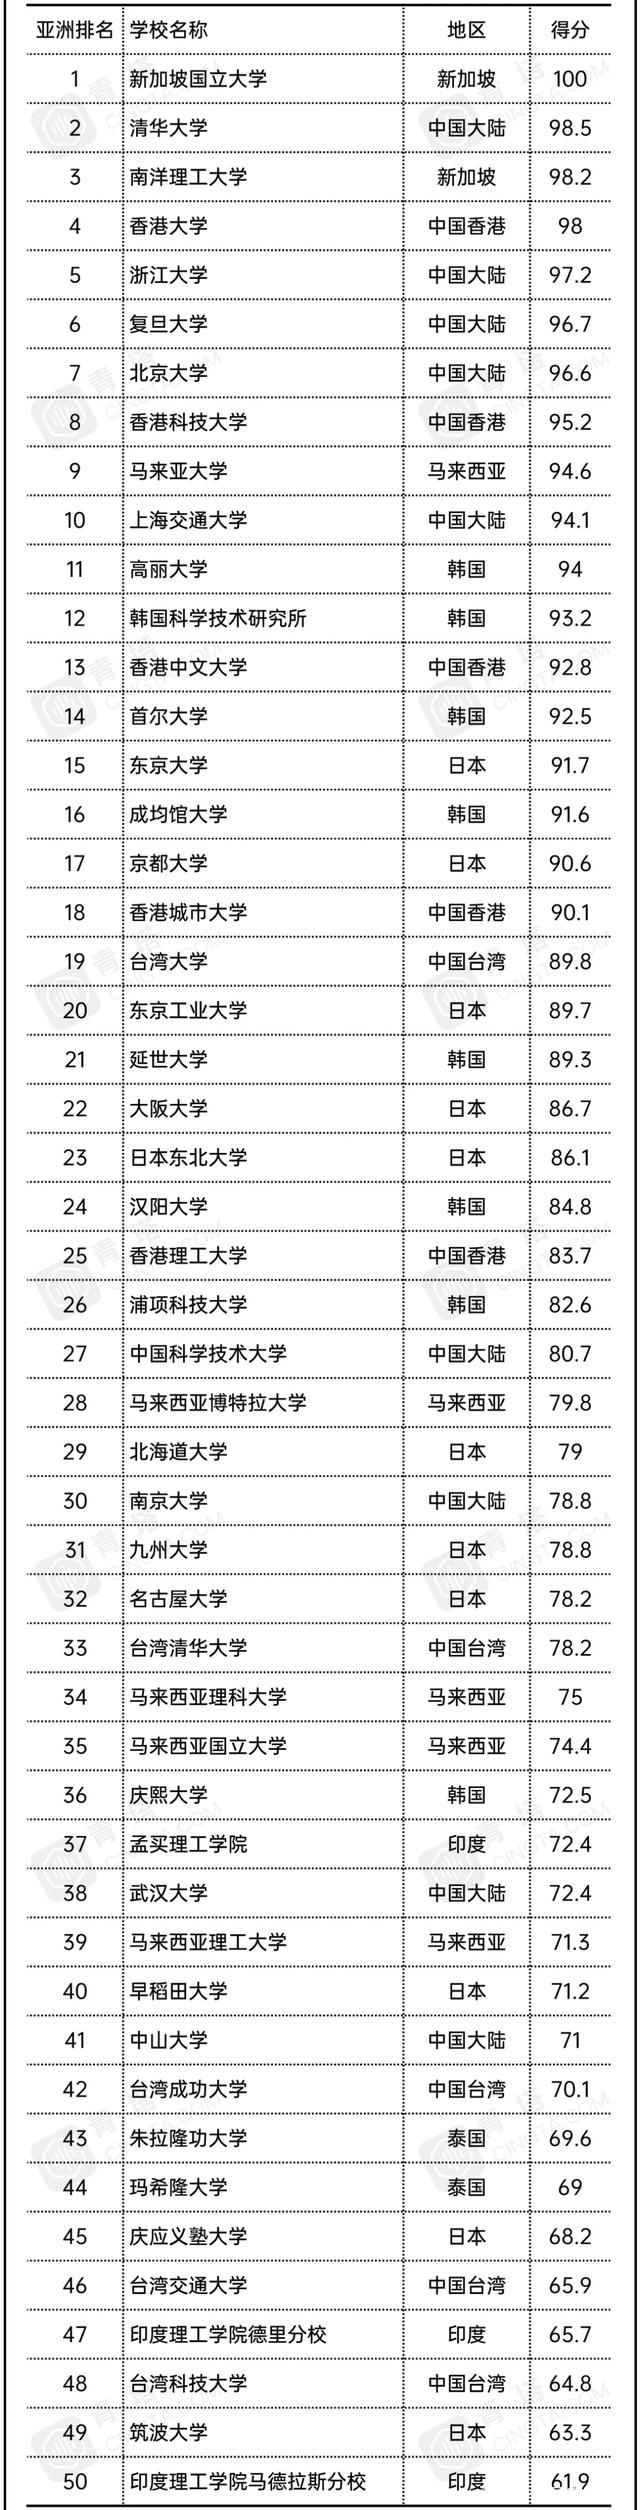 亚洲最好的十所大学是哪十所大学，中国有几所大学上榜？文末附内地排名